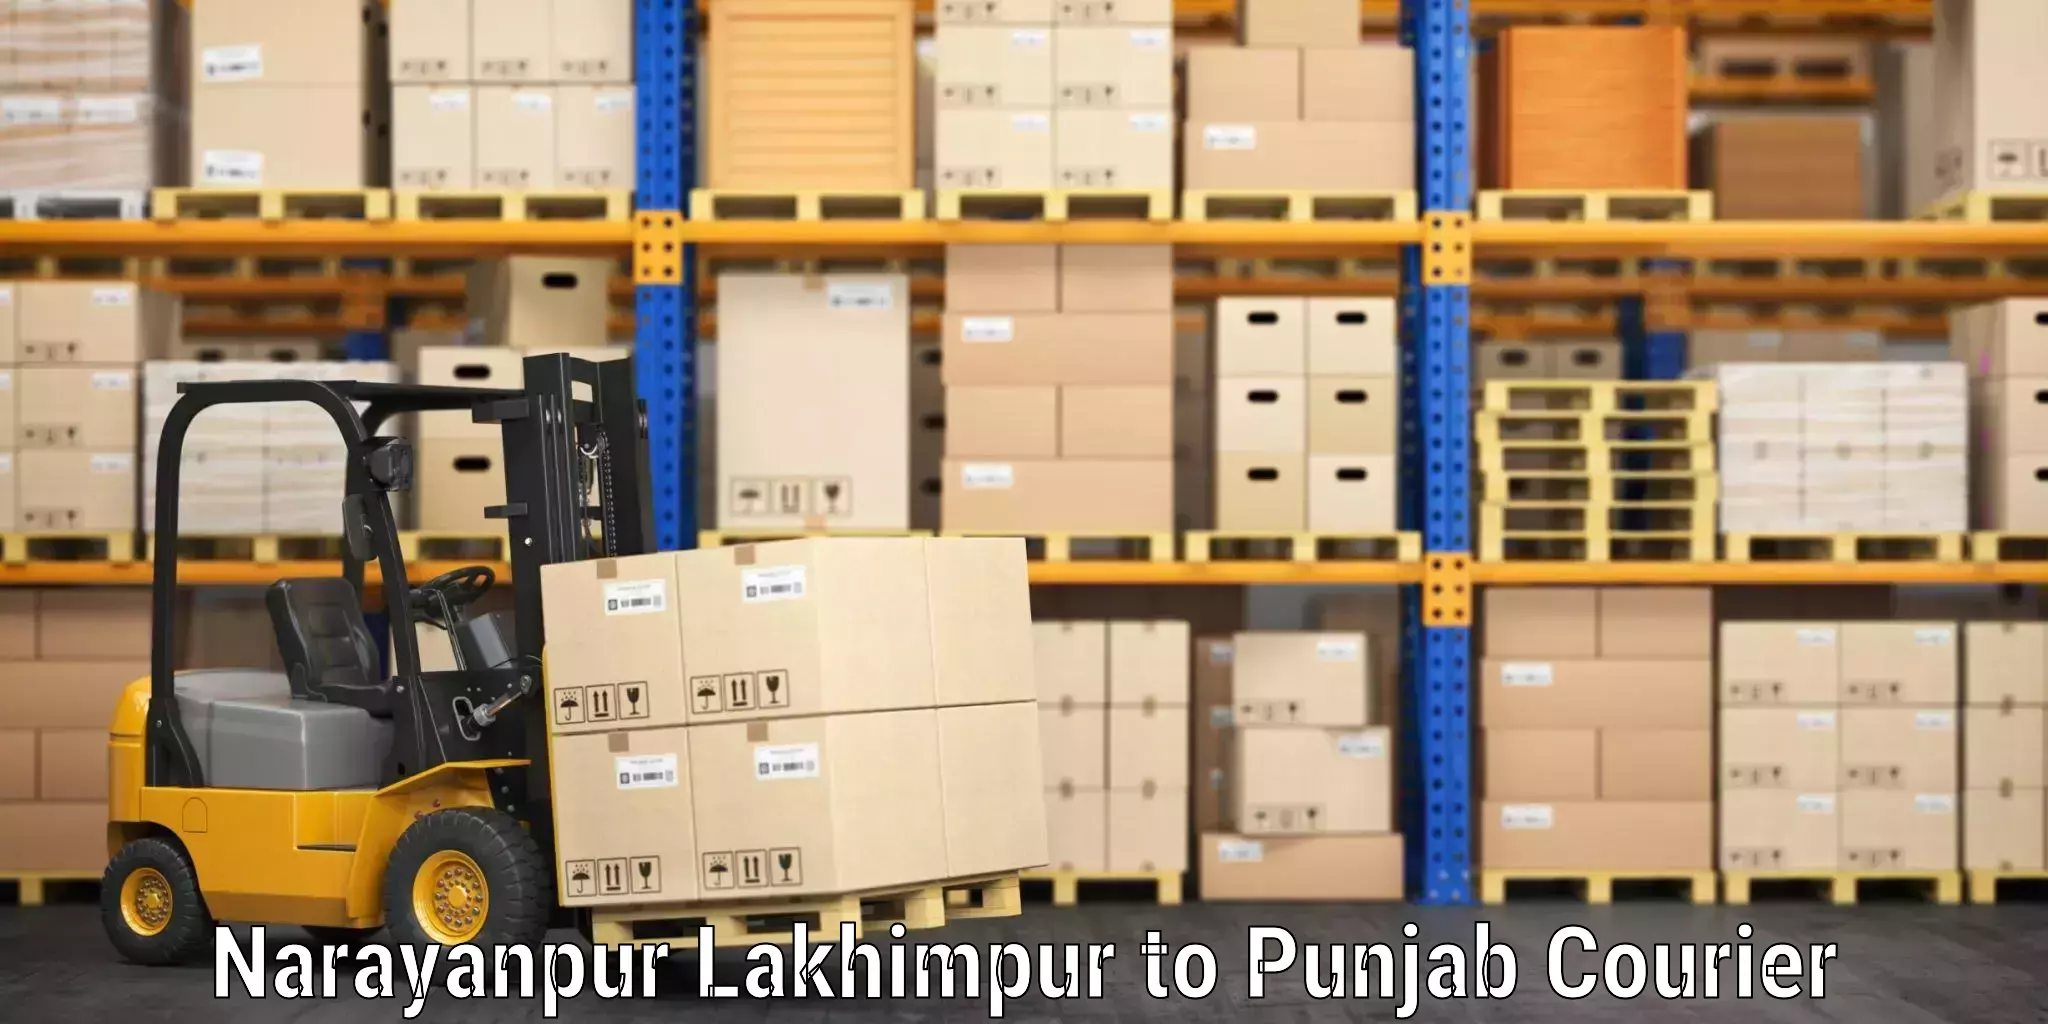 Baggage shipping experts Narayanpur Lakhimpur to Dhilwan